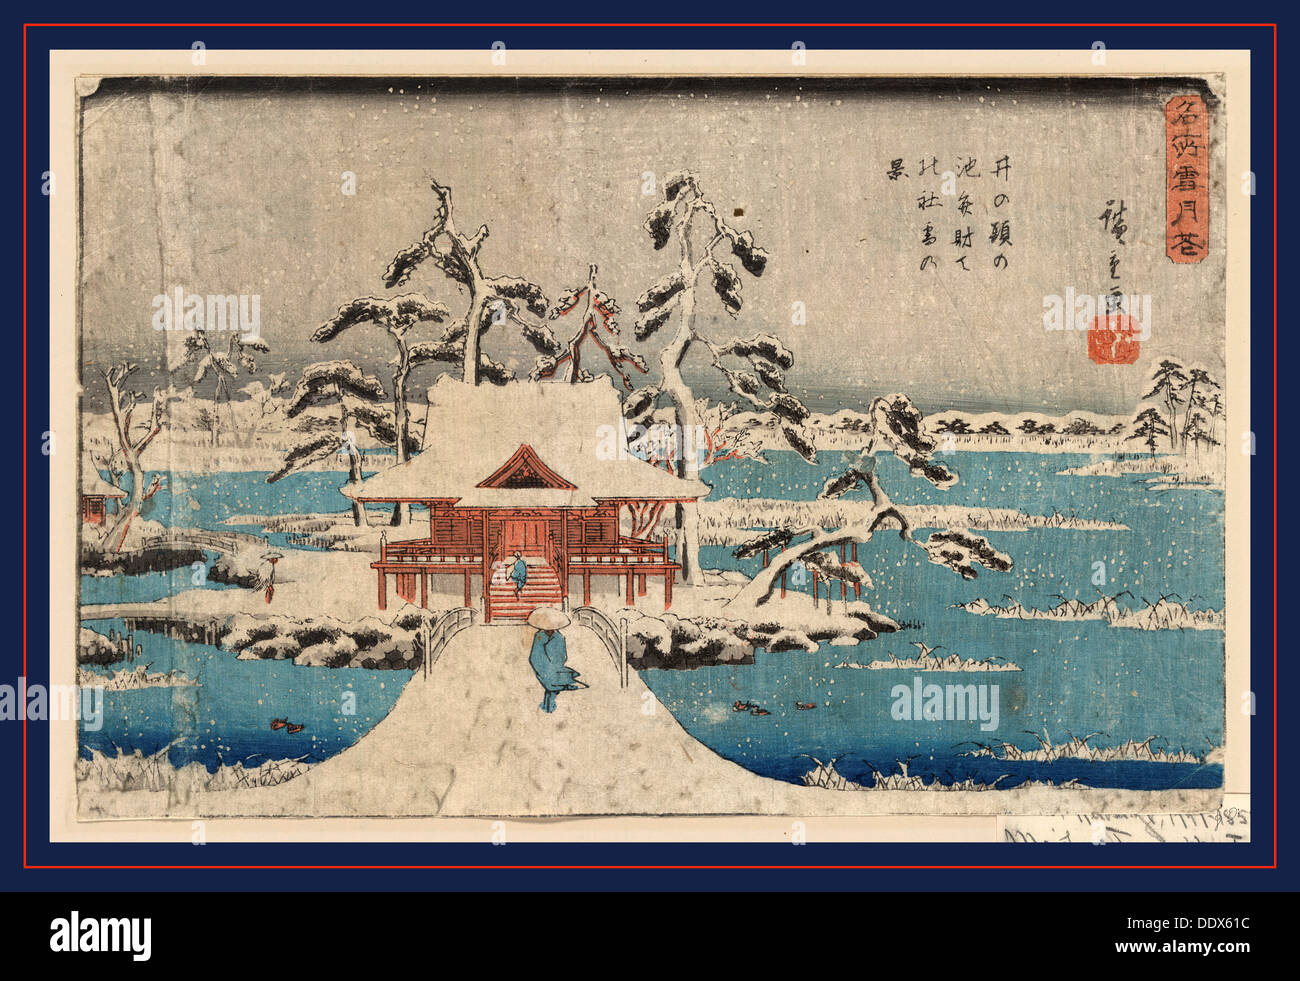 Inokashira no ike benzaiten no yashiro, Snow scene of Benzaiten Shrine in Inokashira pond. [between 1838 and 1844], 1 print : Stock Photo